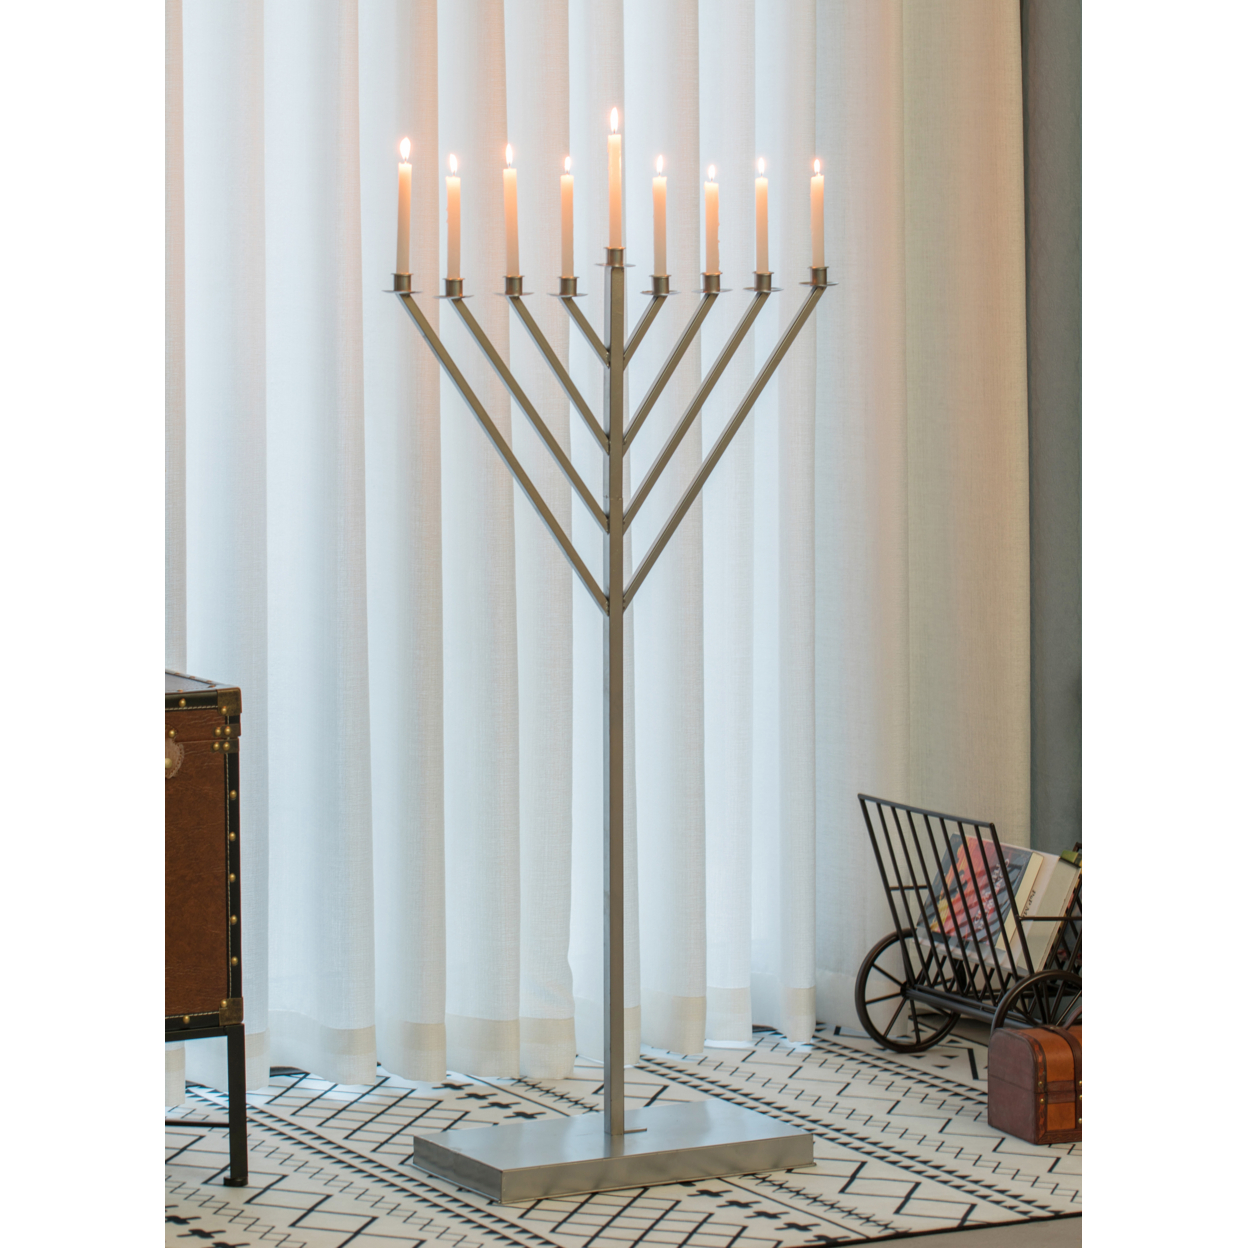 Large Metal Silver Coated Hanukkah Menorah For Synagogue - Medium